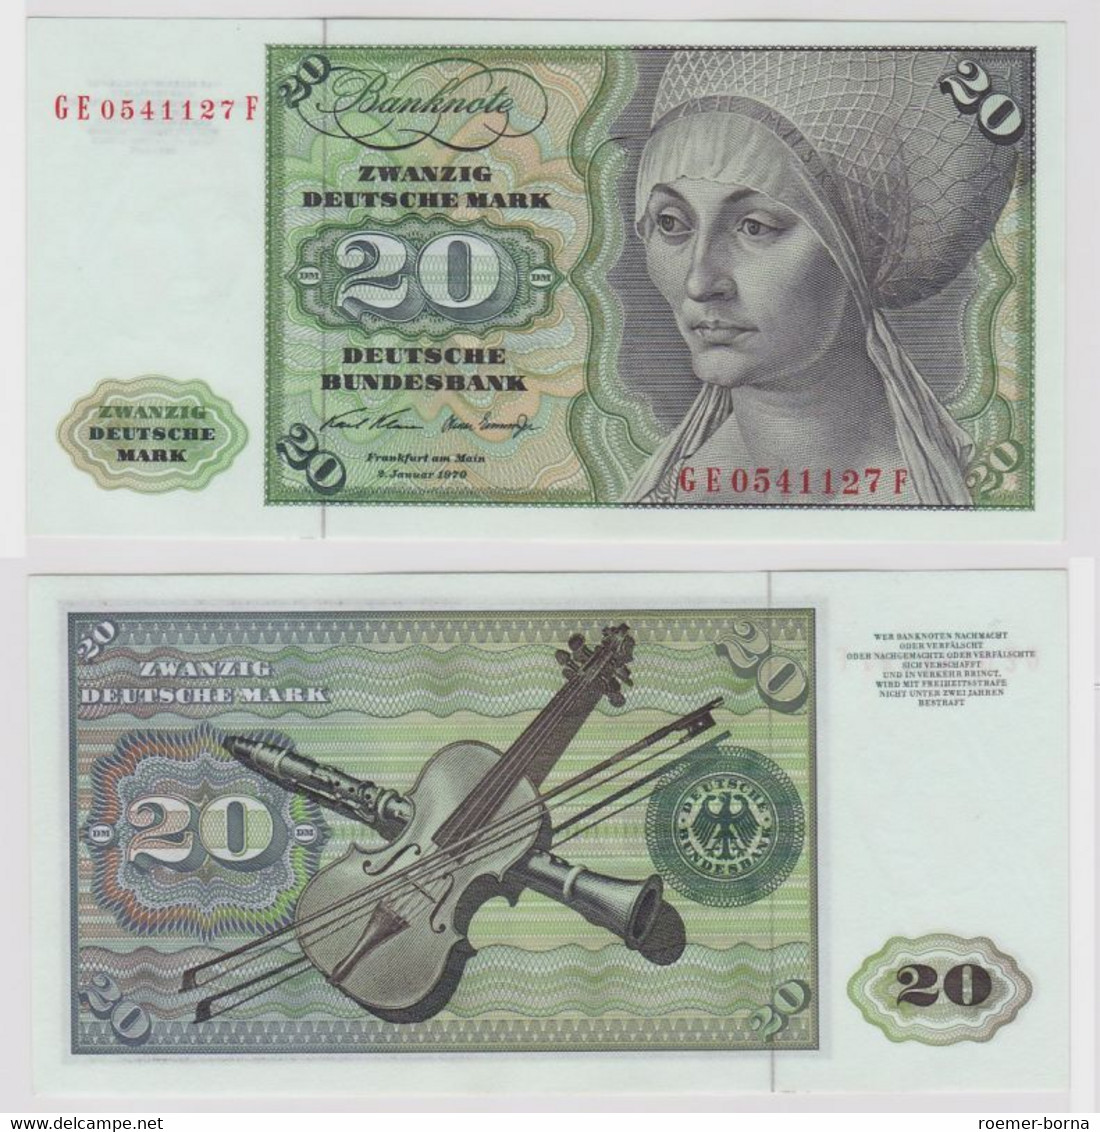 T148615 Banknote 20 DM Deutsche Mark Ro. 271b Schein 2.Jan. 1970 KN GE 0541127 F - 20 DM